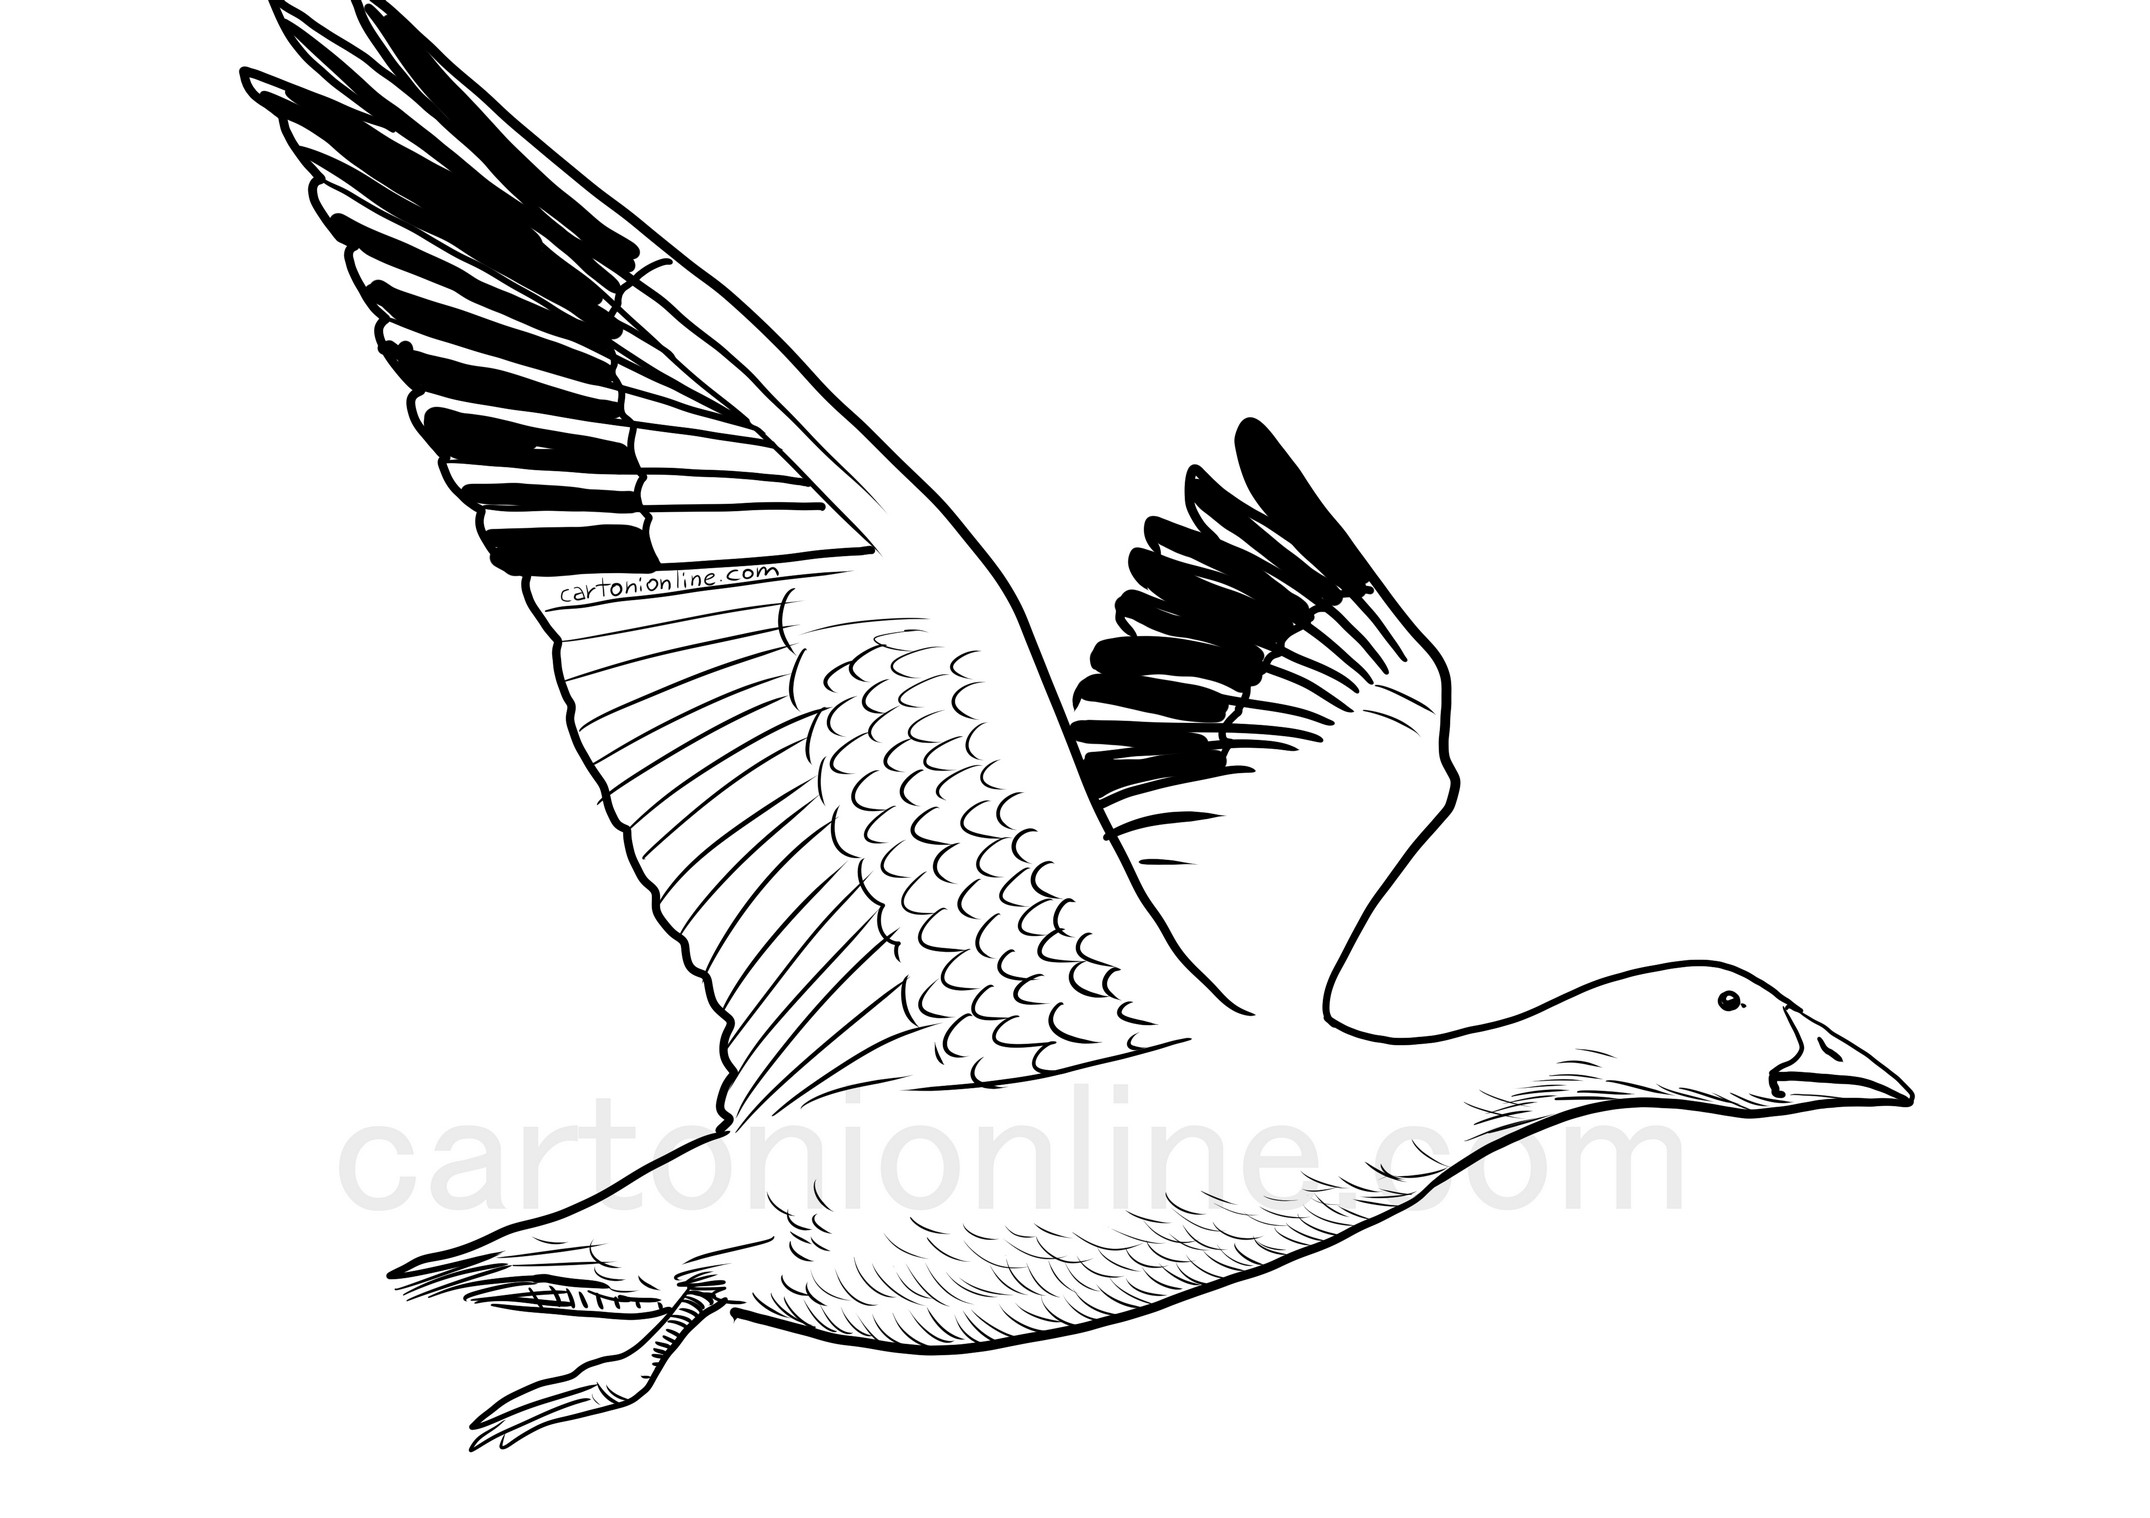 Dibujo de ganso en vuelo para imprimir y colorear